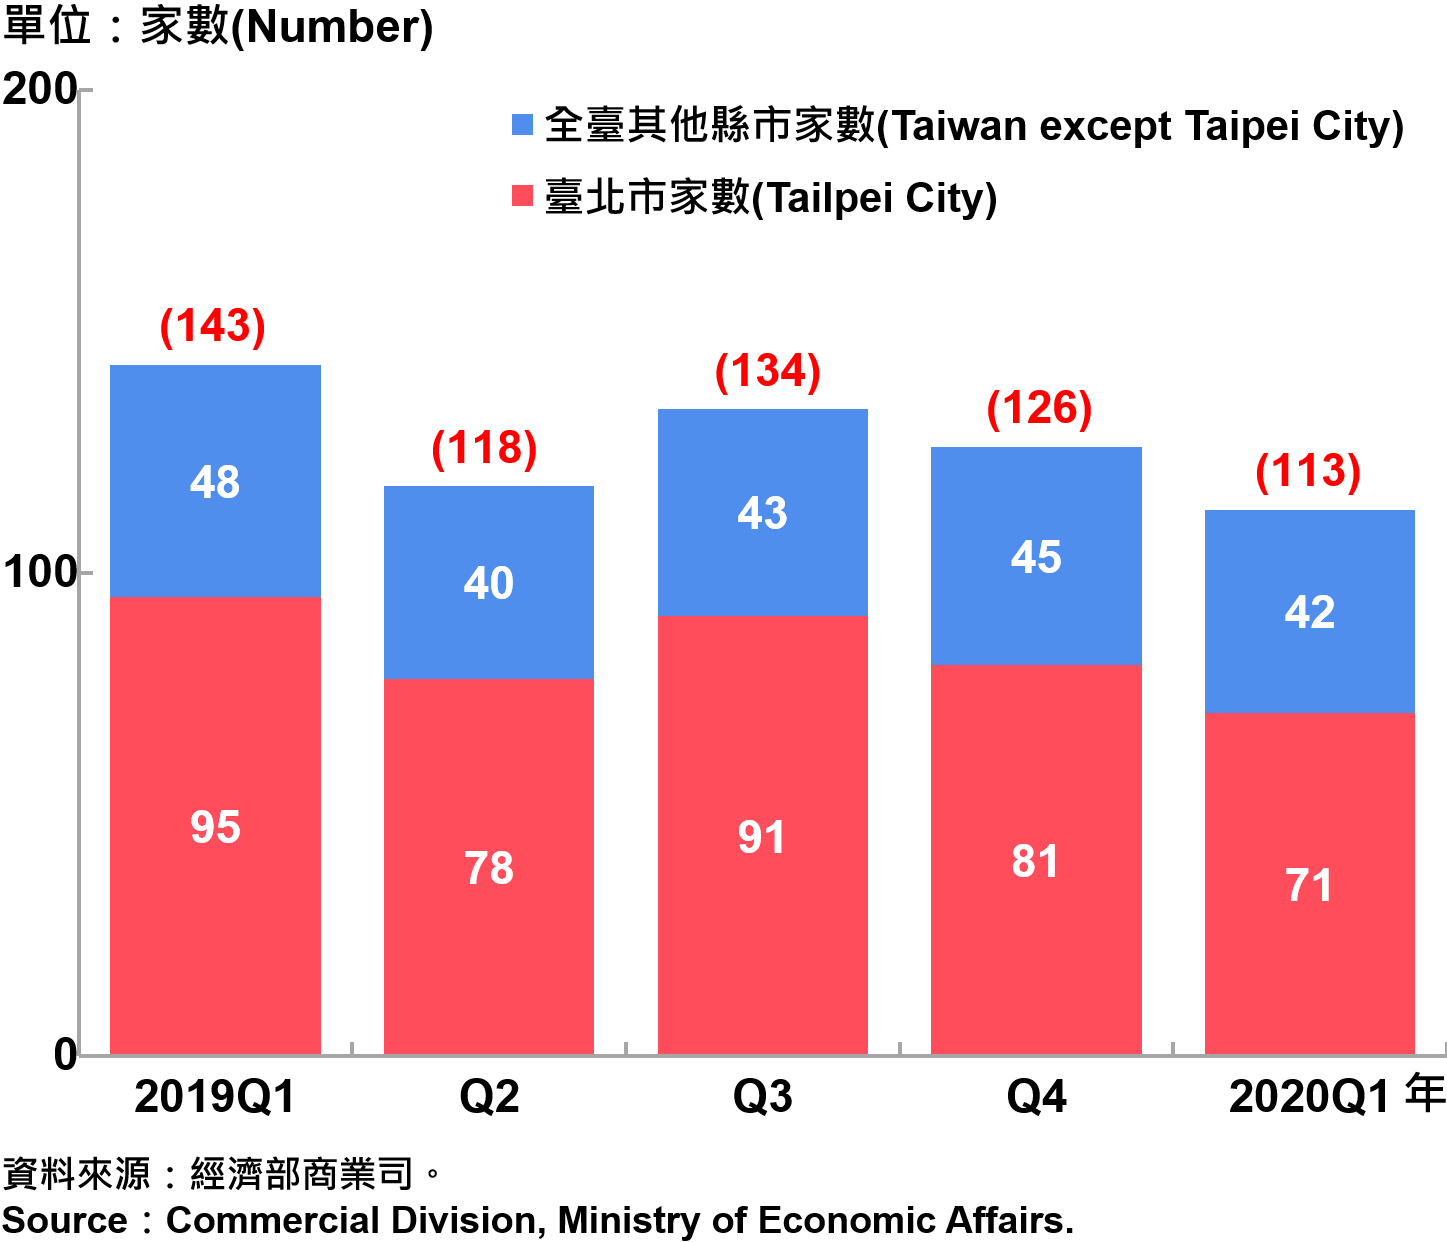 臺北市外商公司新設立家數—2020Q1 Number of Newly Established Foreign Companies in Taipei City—2020Q1